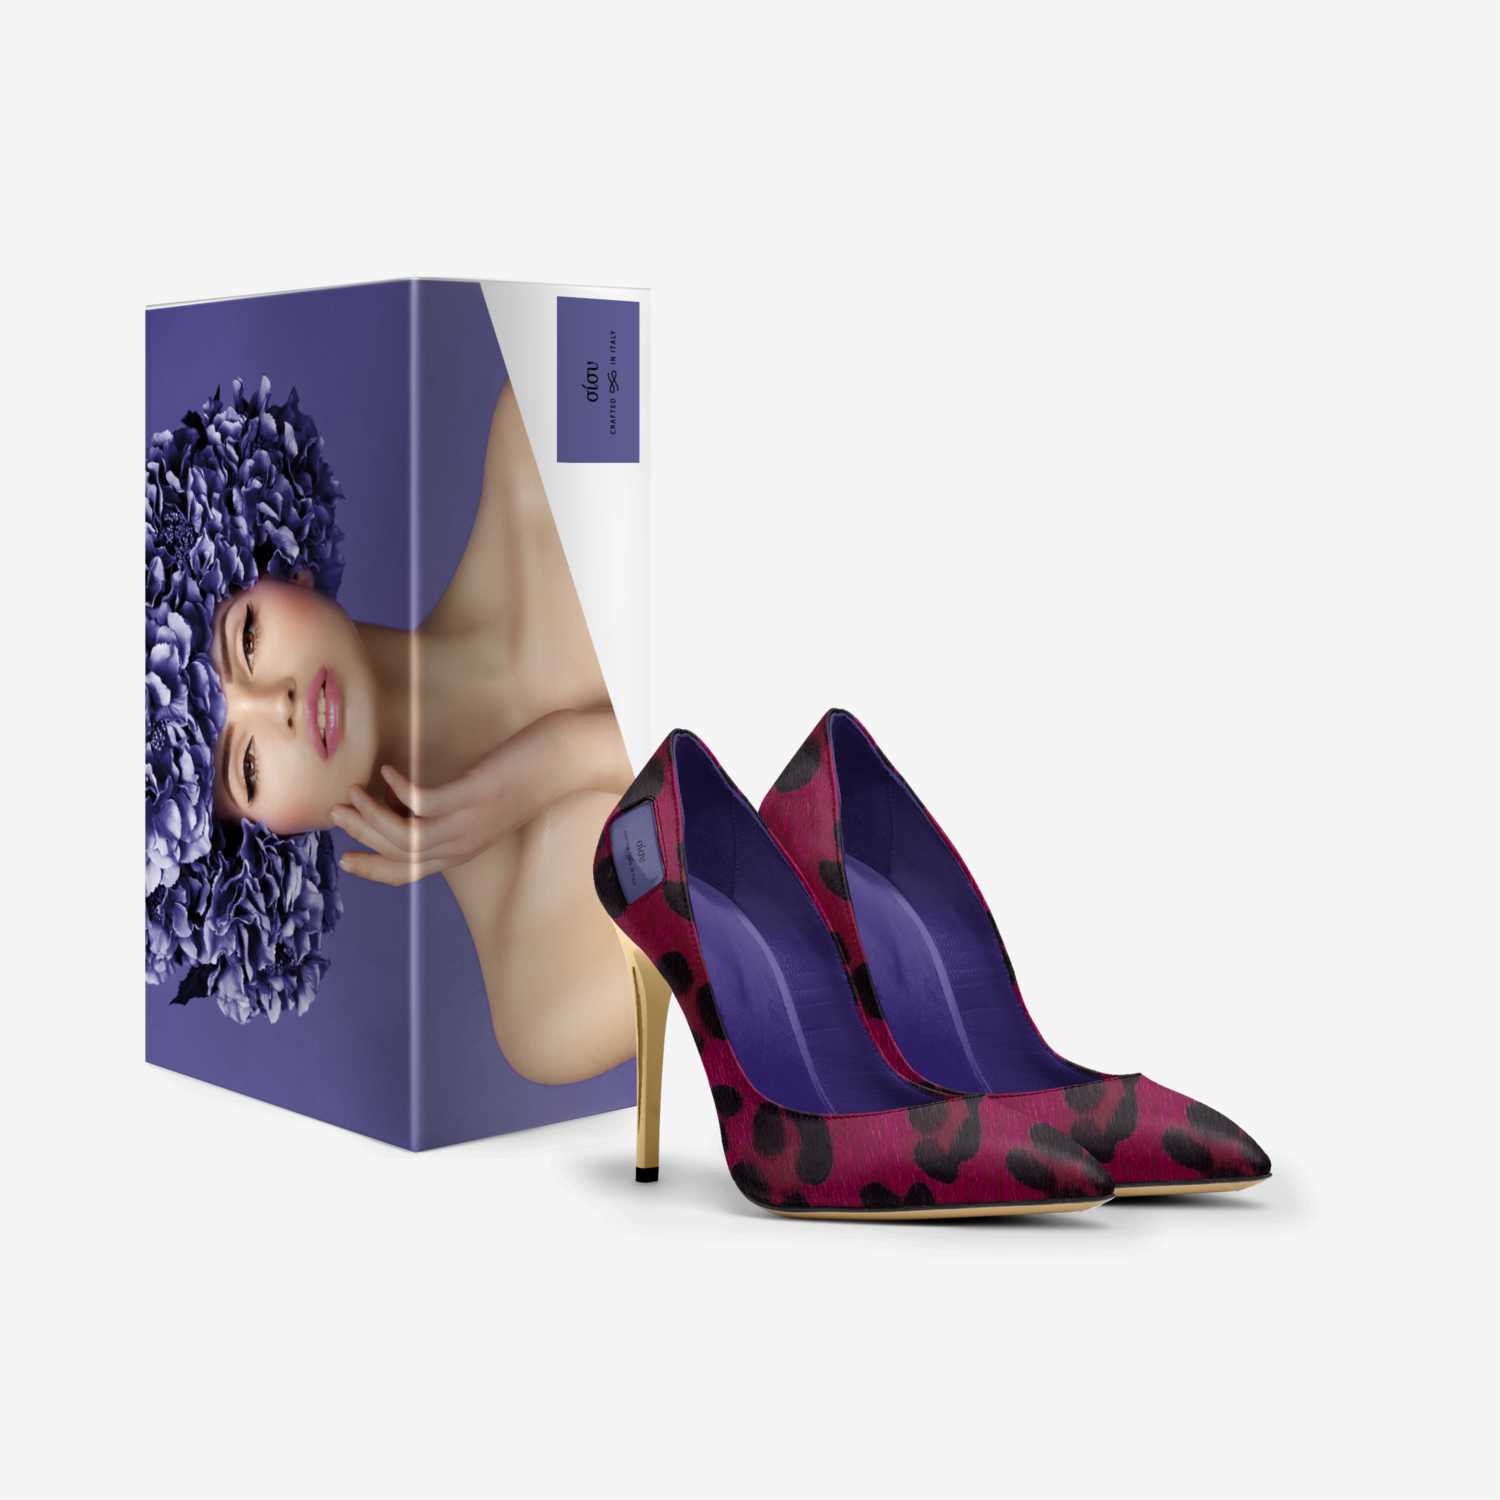 σίσυ custom made in Italy shoes by Theodosia Charitou | Box view